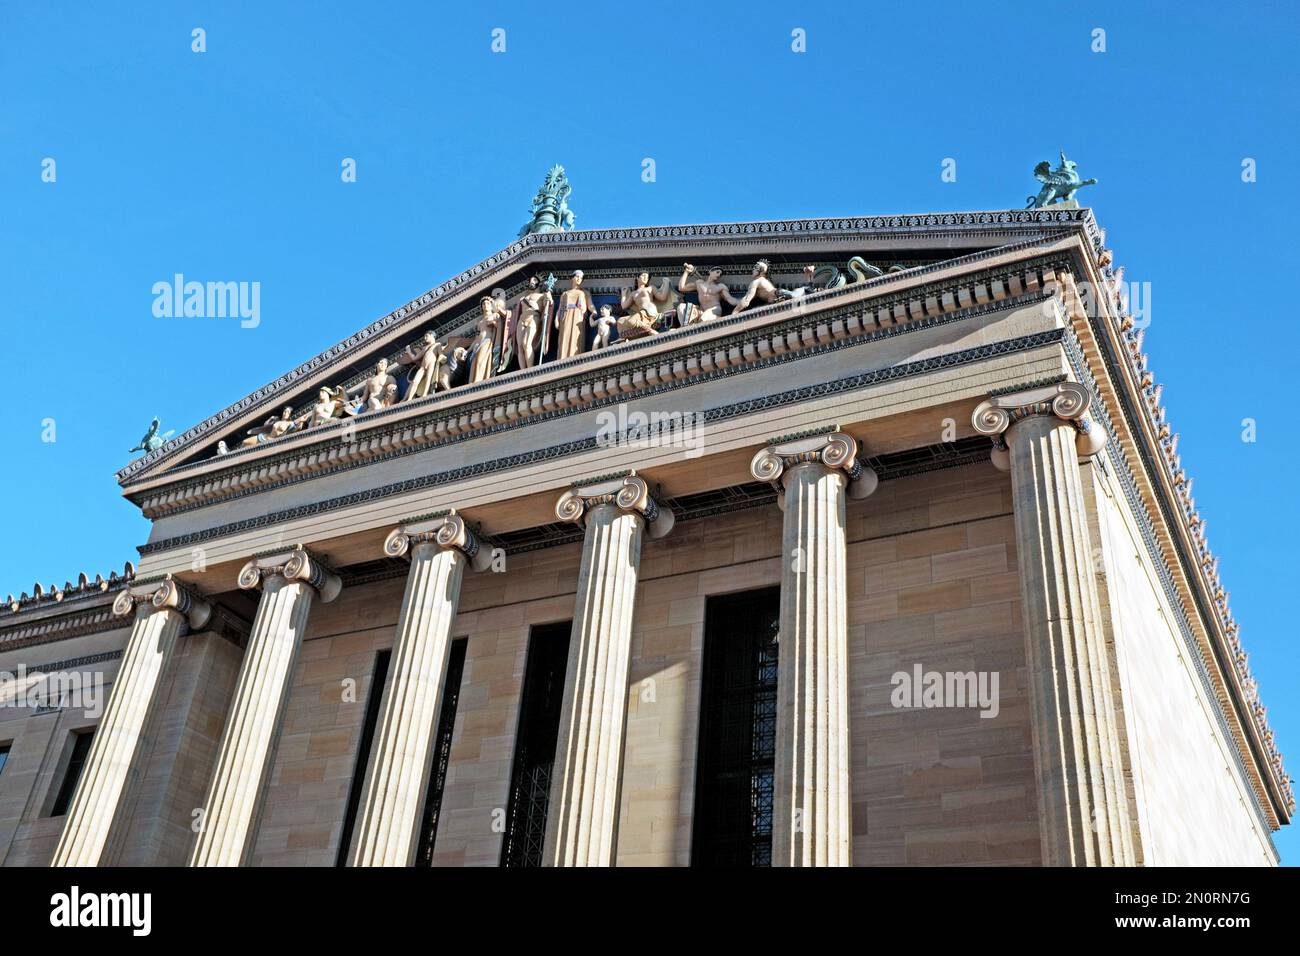 Le fronton du Musée d'art de Philadelphie de Carl Paul Jennewein dépeint 13 dieux et déesses grecs avec un thème d'amour dans la civilisation occidentale. Banque D'Images